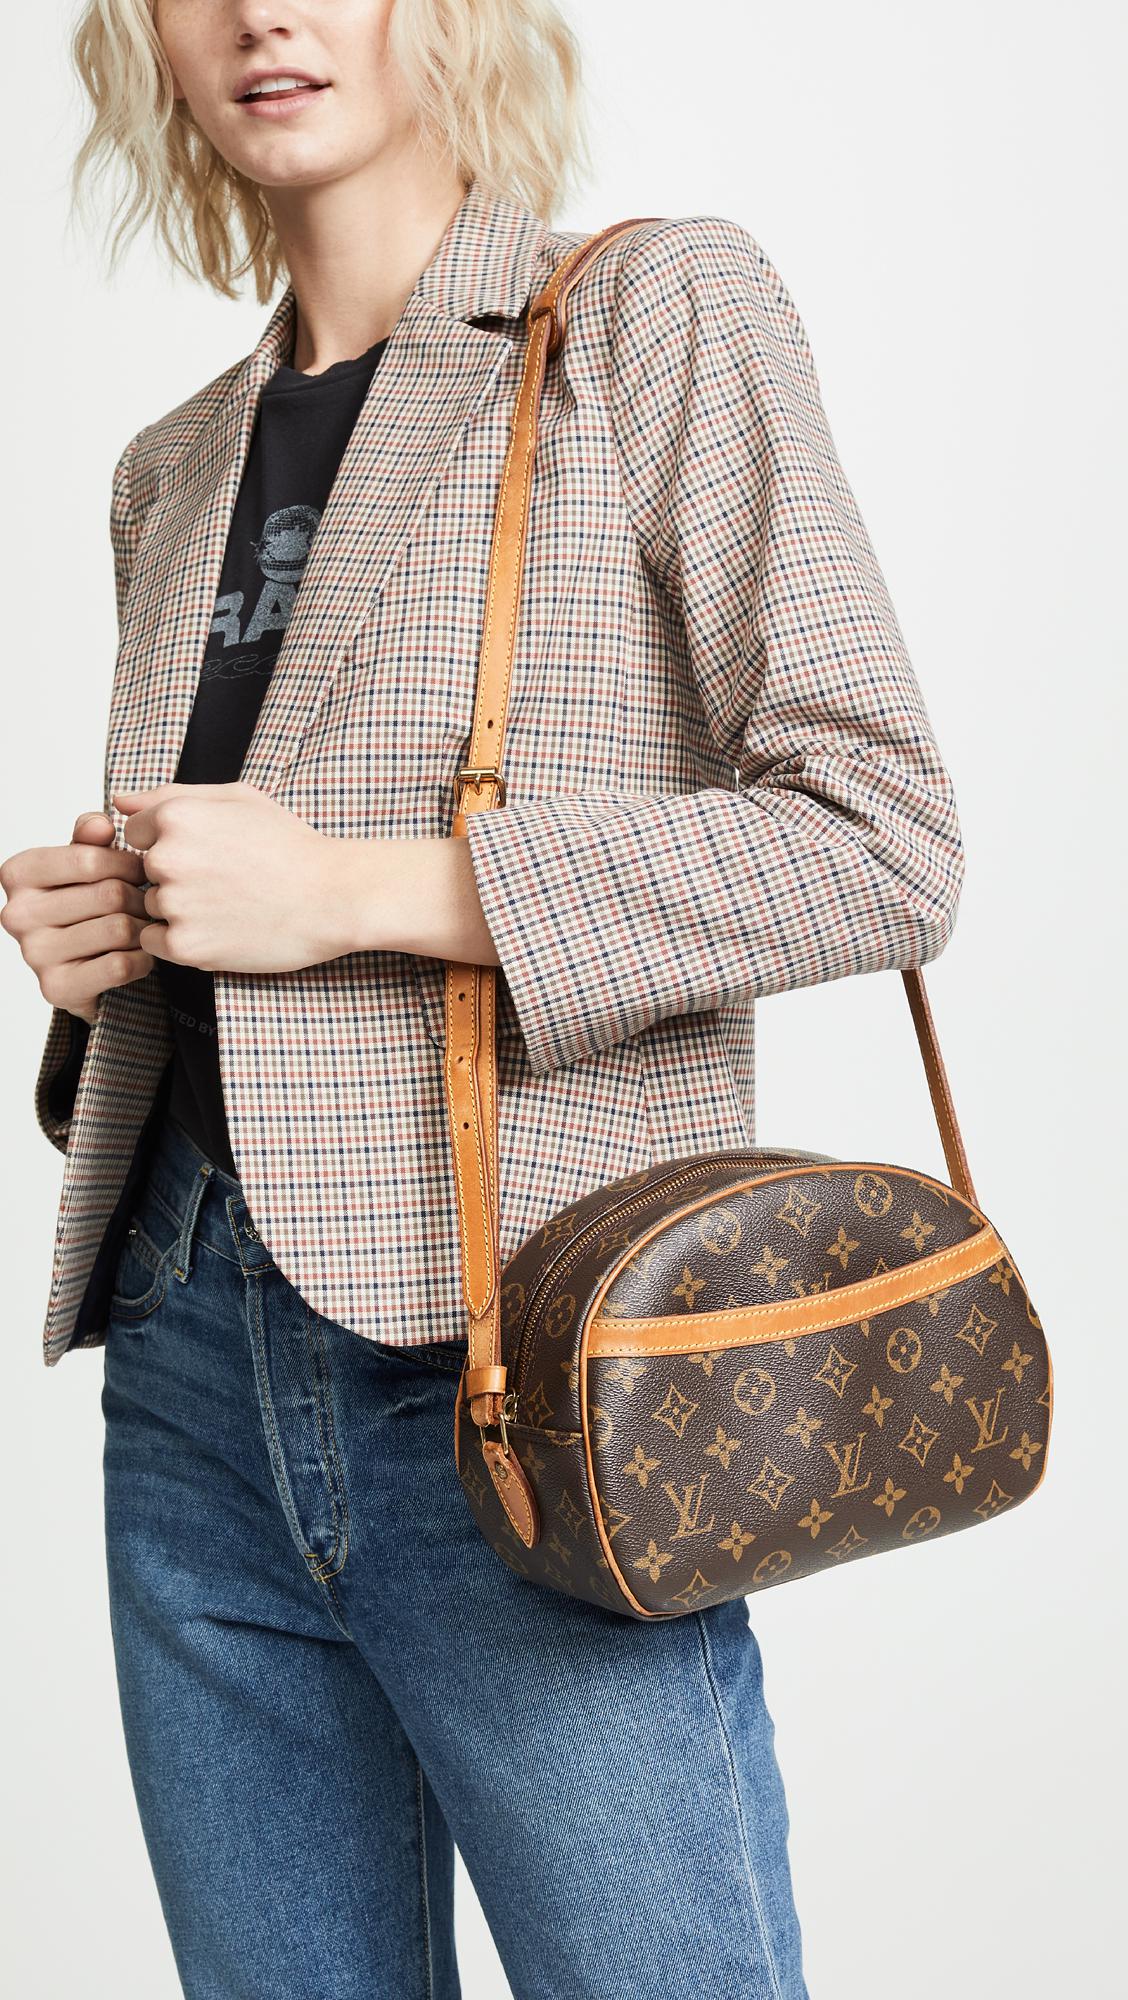 Louis Vuitton Monogram Blois Bag – The Closet